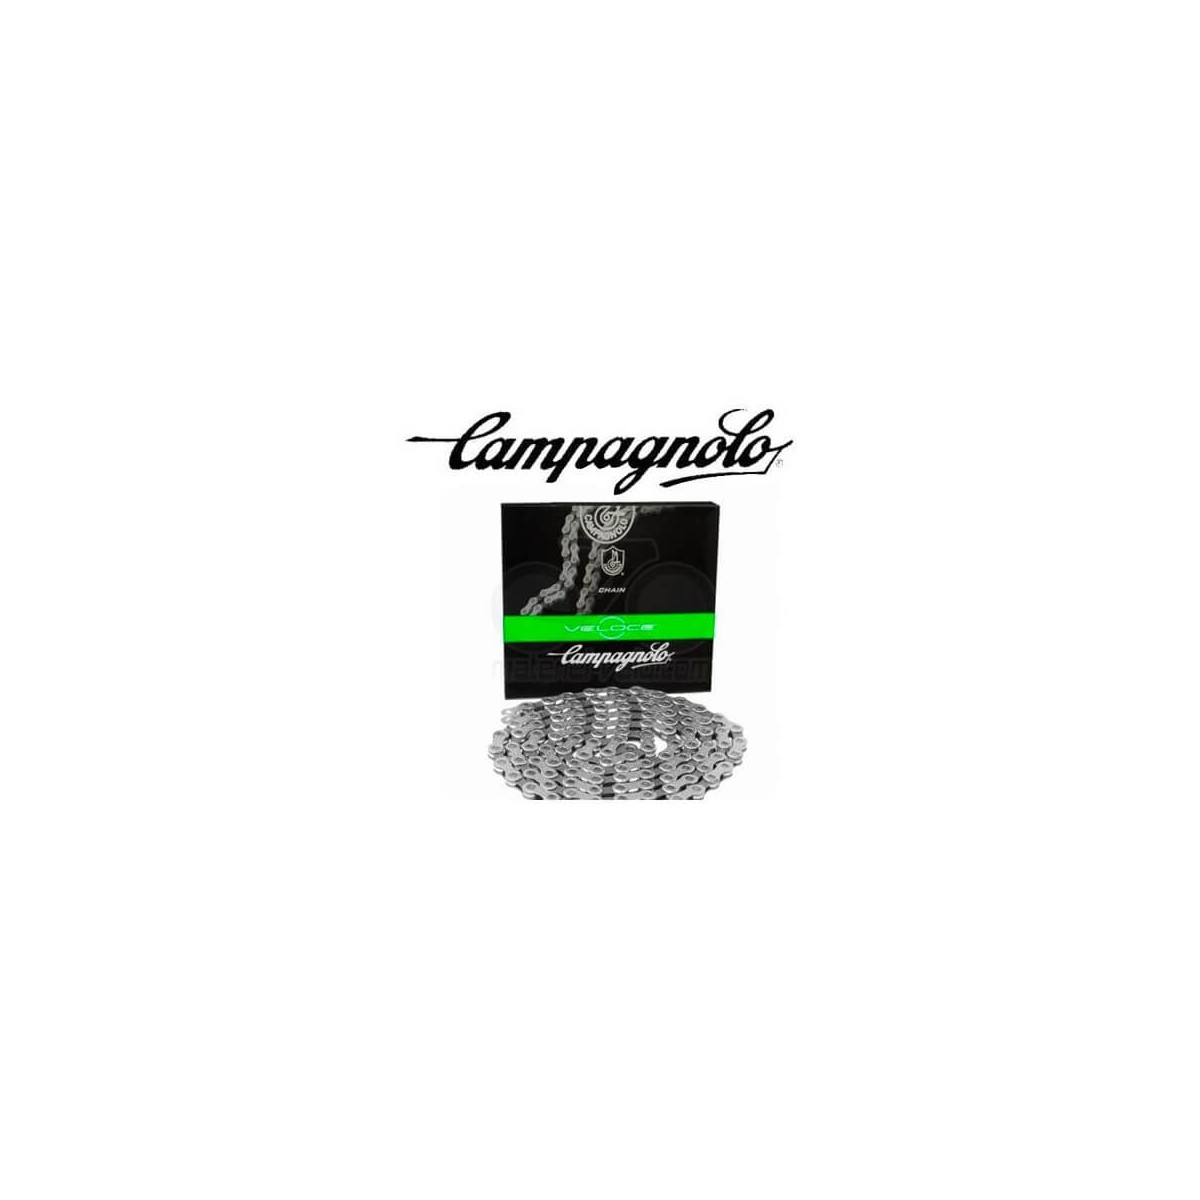 Cassetta Campagnolo Veloce 10x + Catena Veloce 114 Maglie (cn11-vlx)